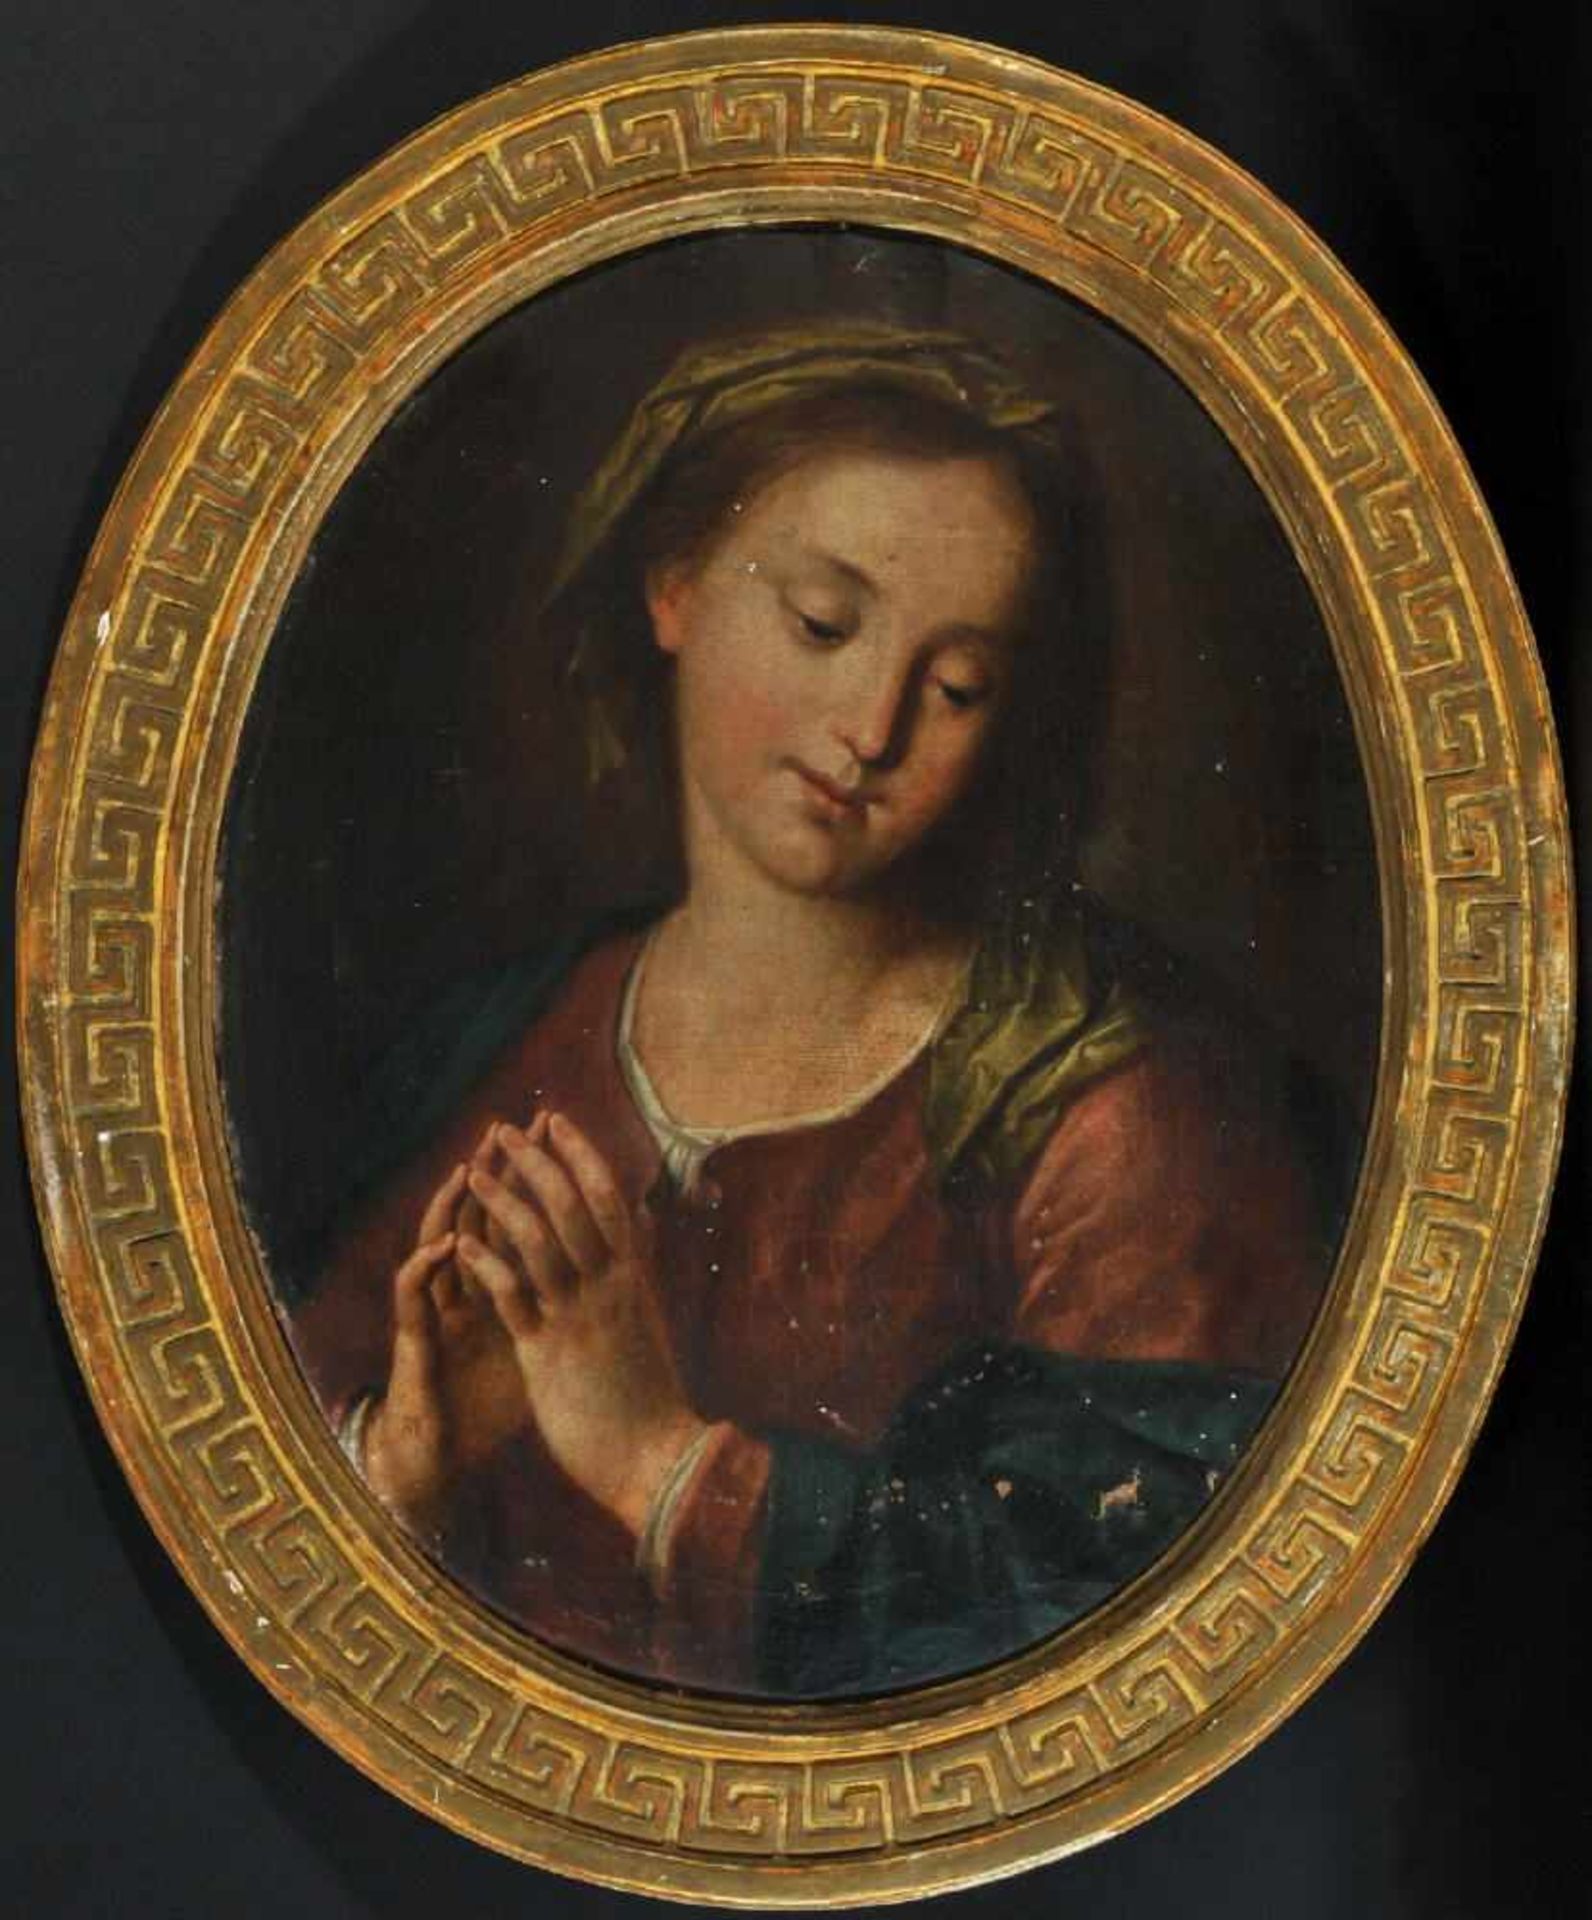 Bildnismaler des 18. Jh.Öl/Lwd, oval, 55 x 43 cm, " Betende Maria ", besch.